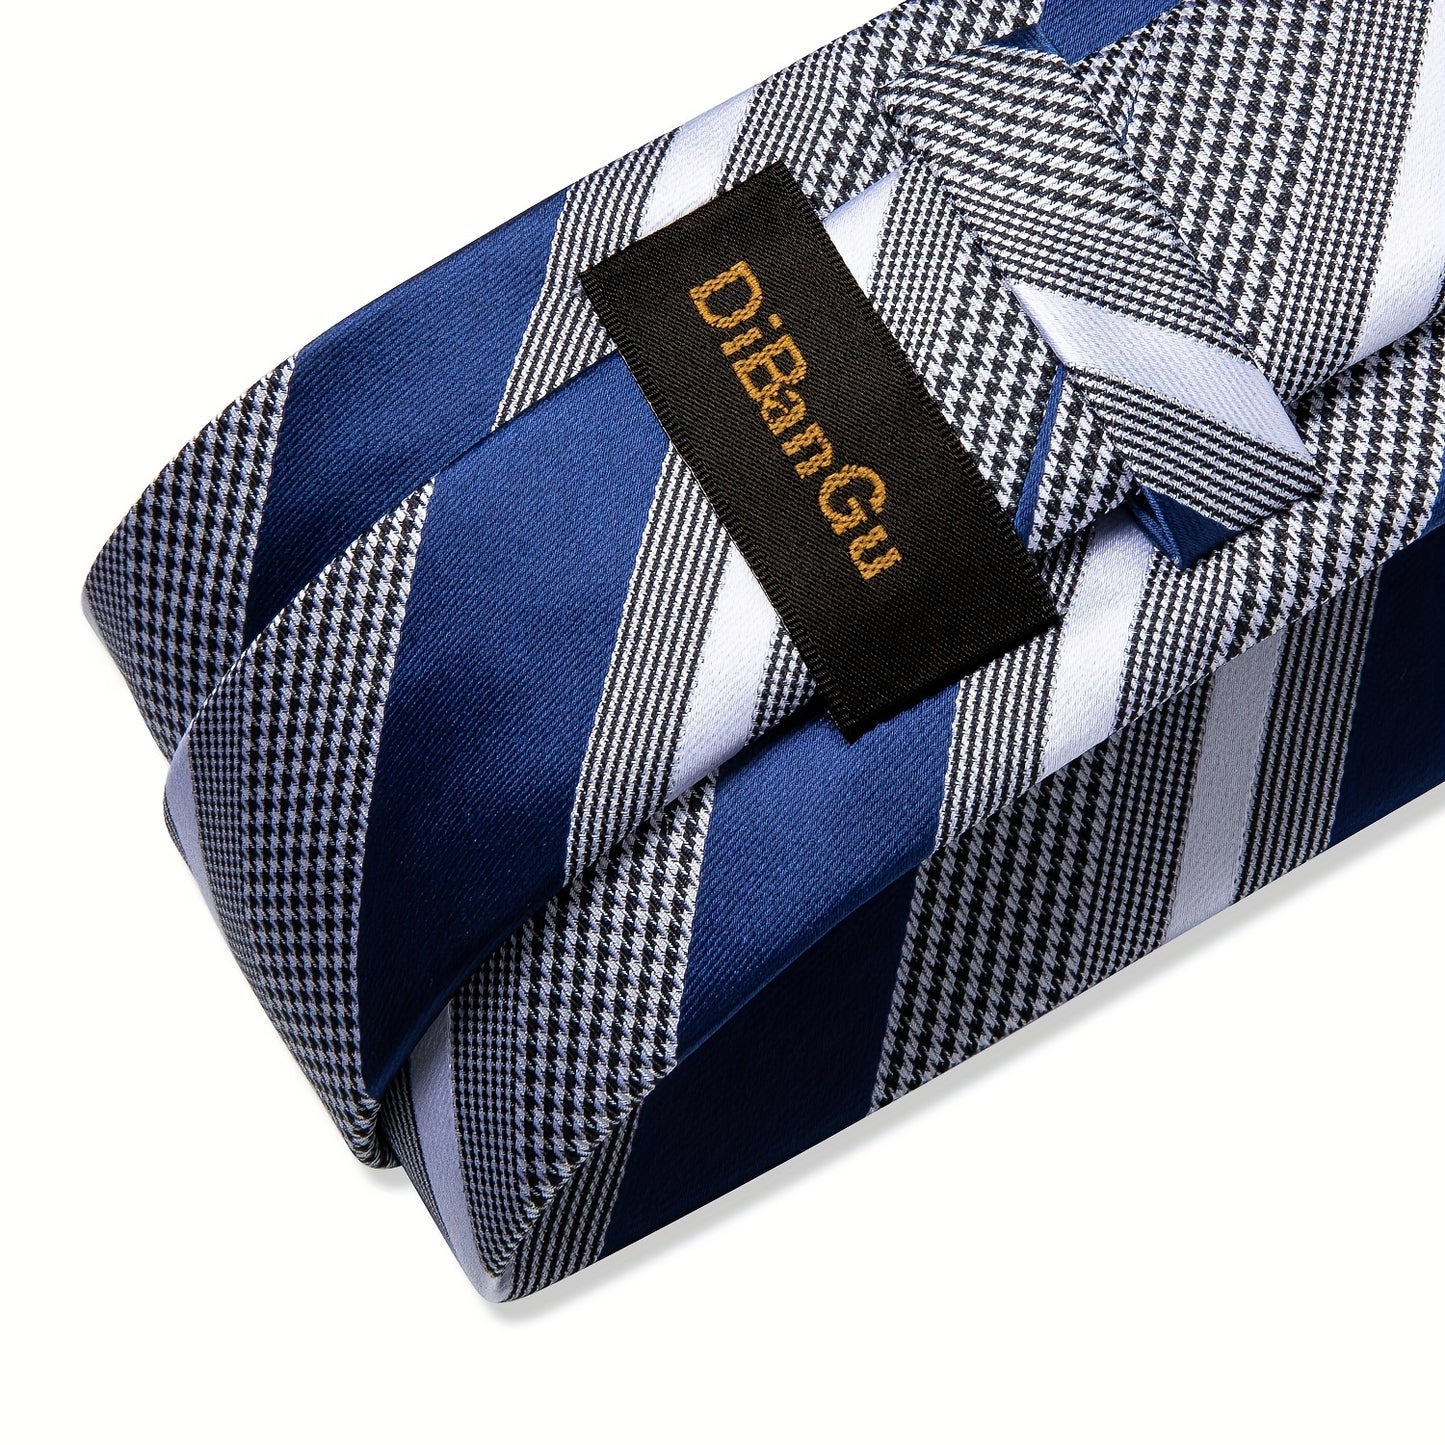 DiBanGu Formal Ties Classic Striped Necktie Handkerchief Cufflinks Gift For Men Wedding Tie Business Cravate